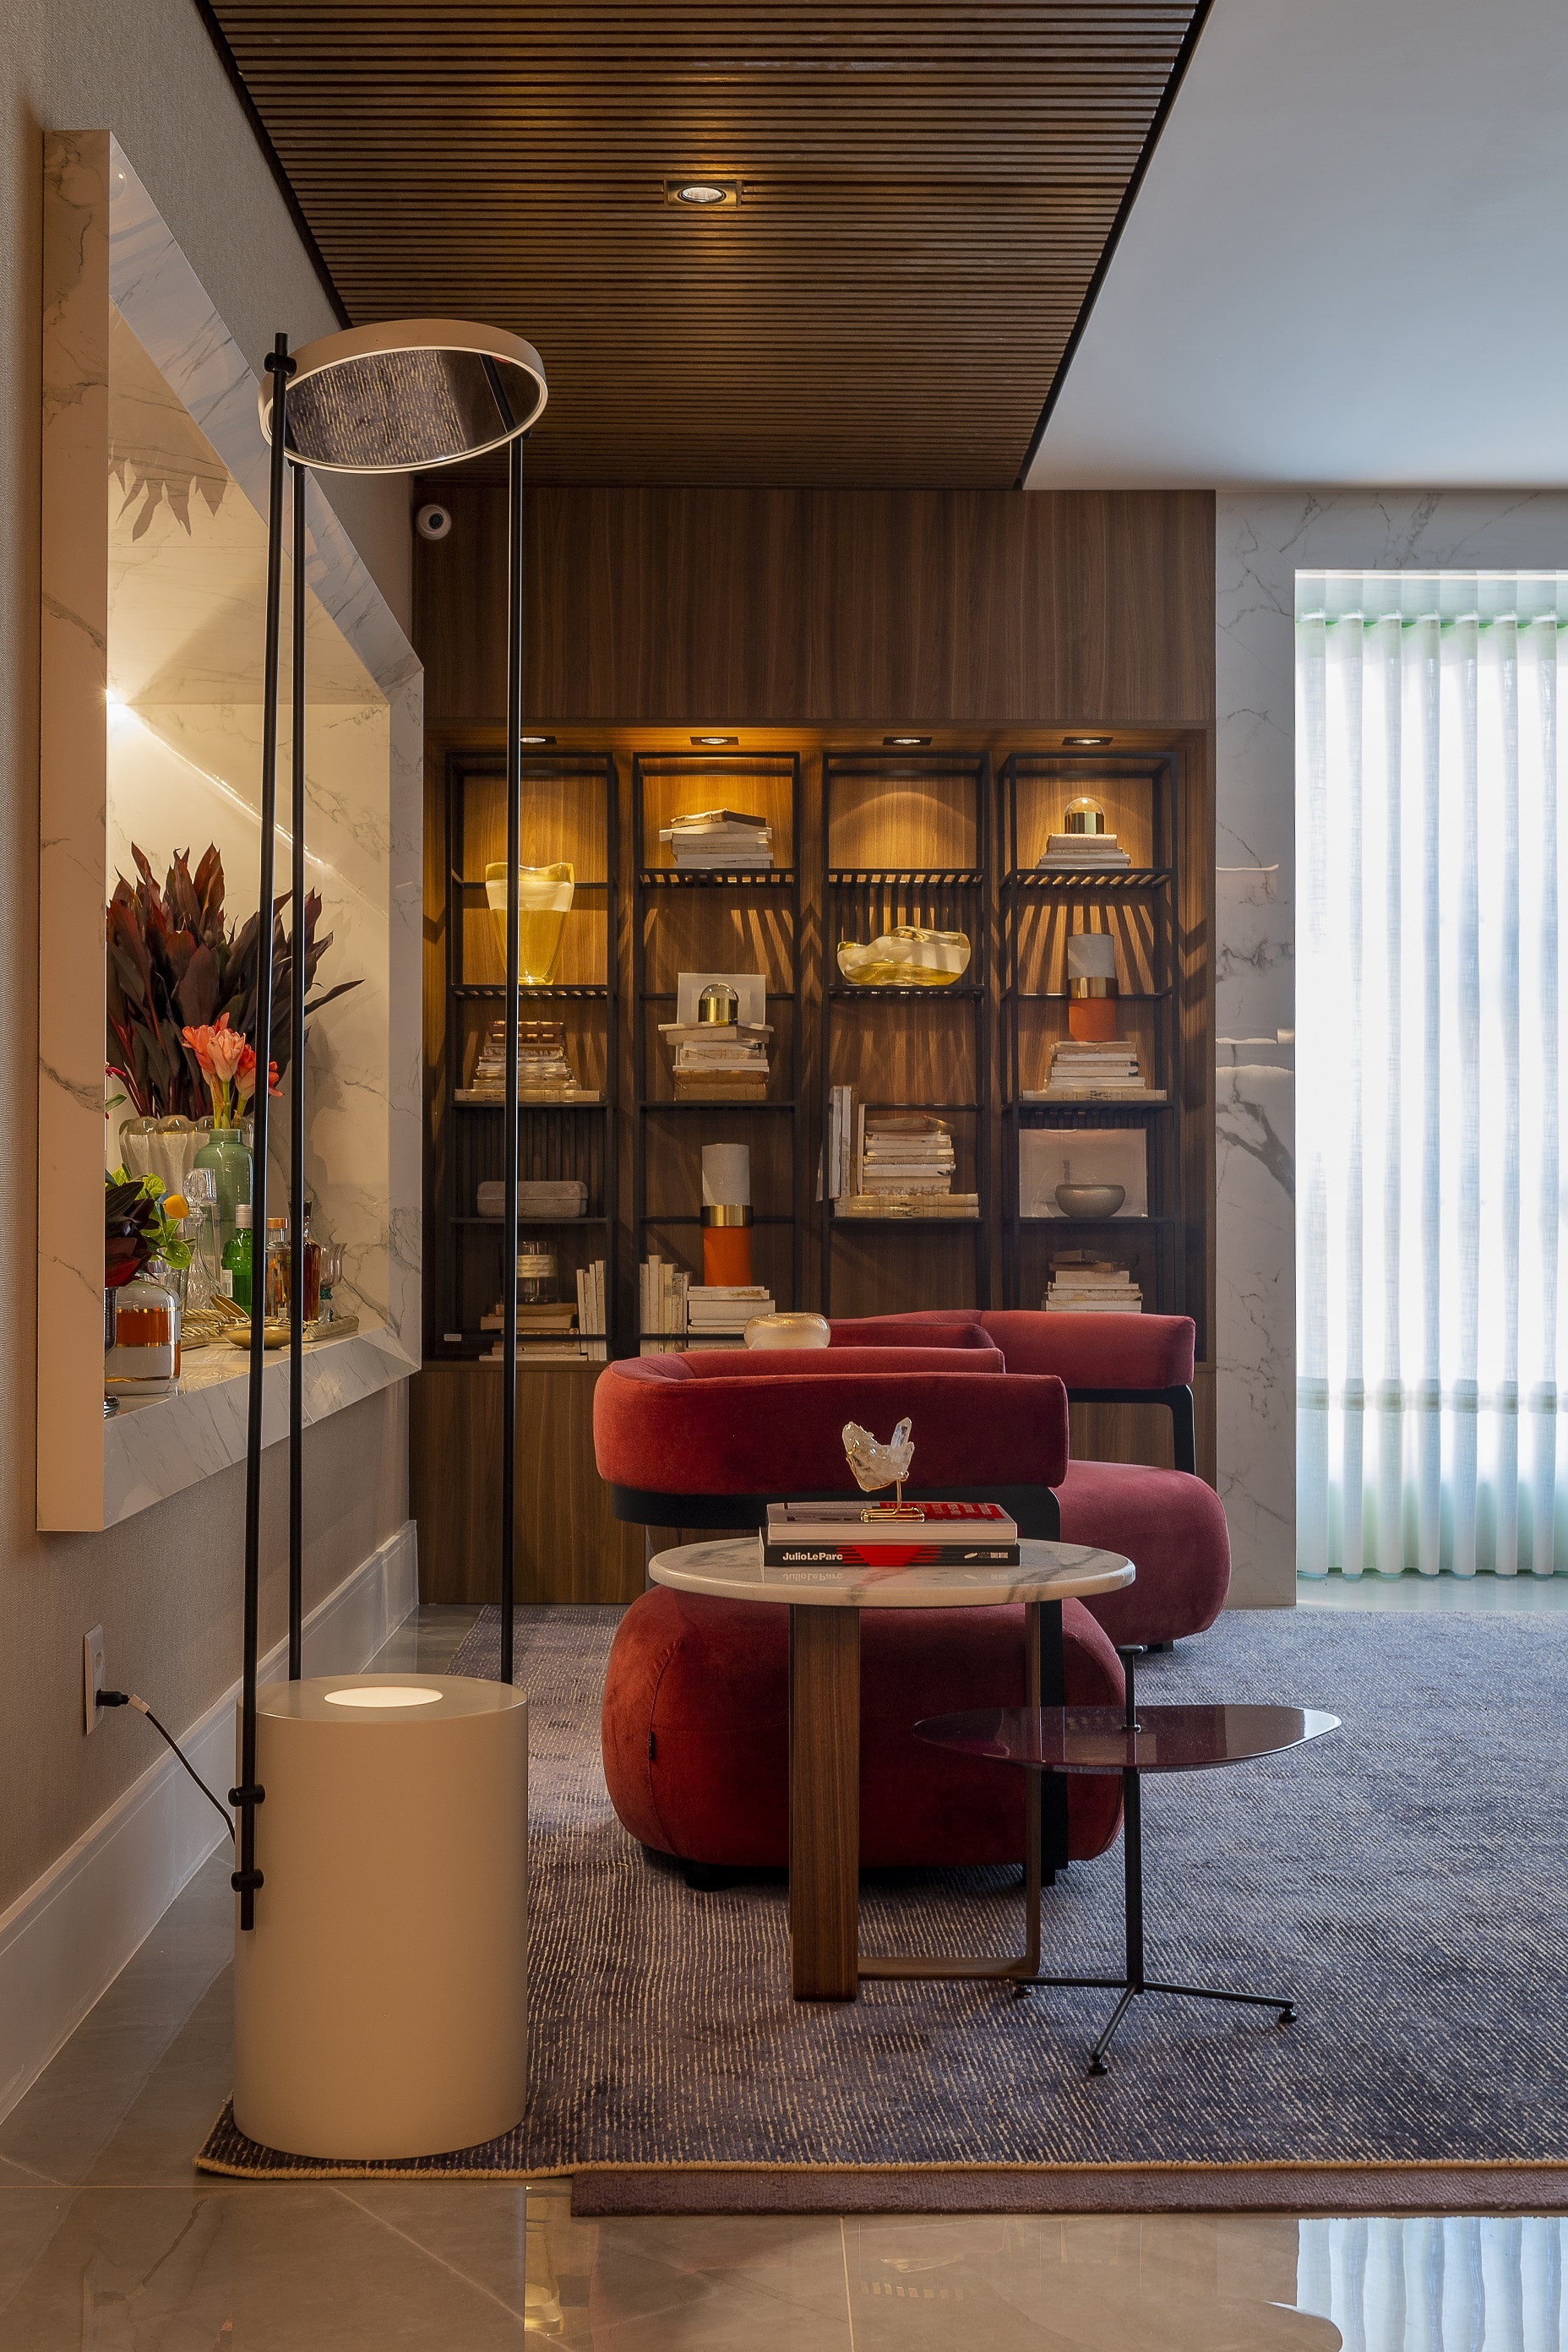 Casa Cor 2019: Linie Lounge Espaço com poltronas modernas vermelhas, parede do fundo revestida com madeiras e prateleiras, tapete com linhas e um abajur branco moderno.